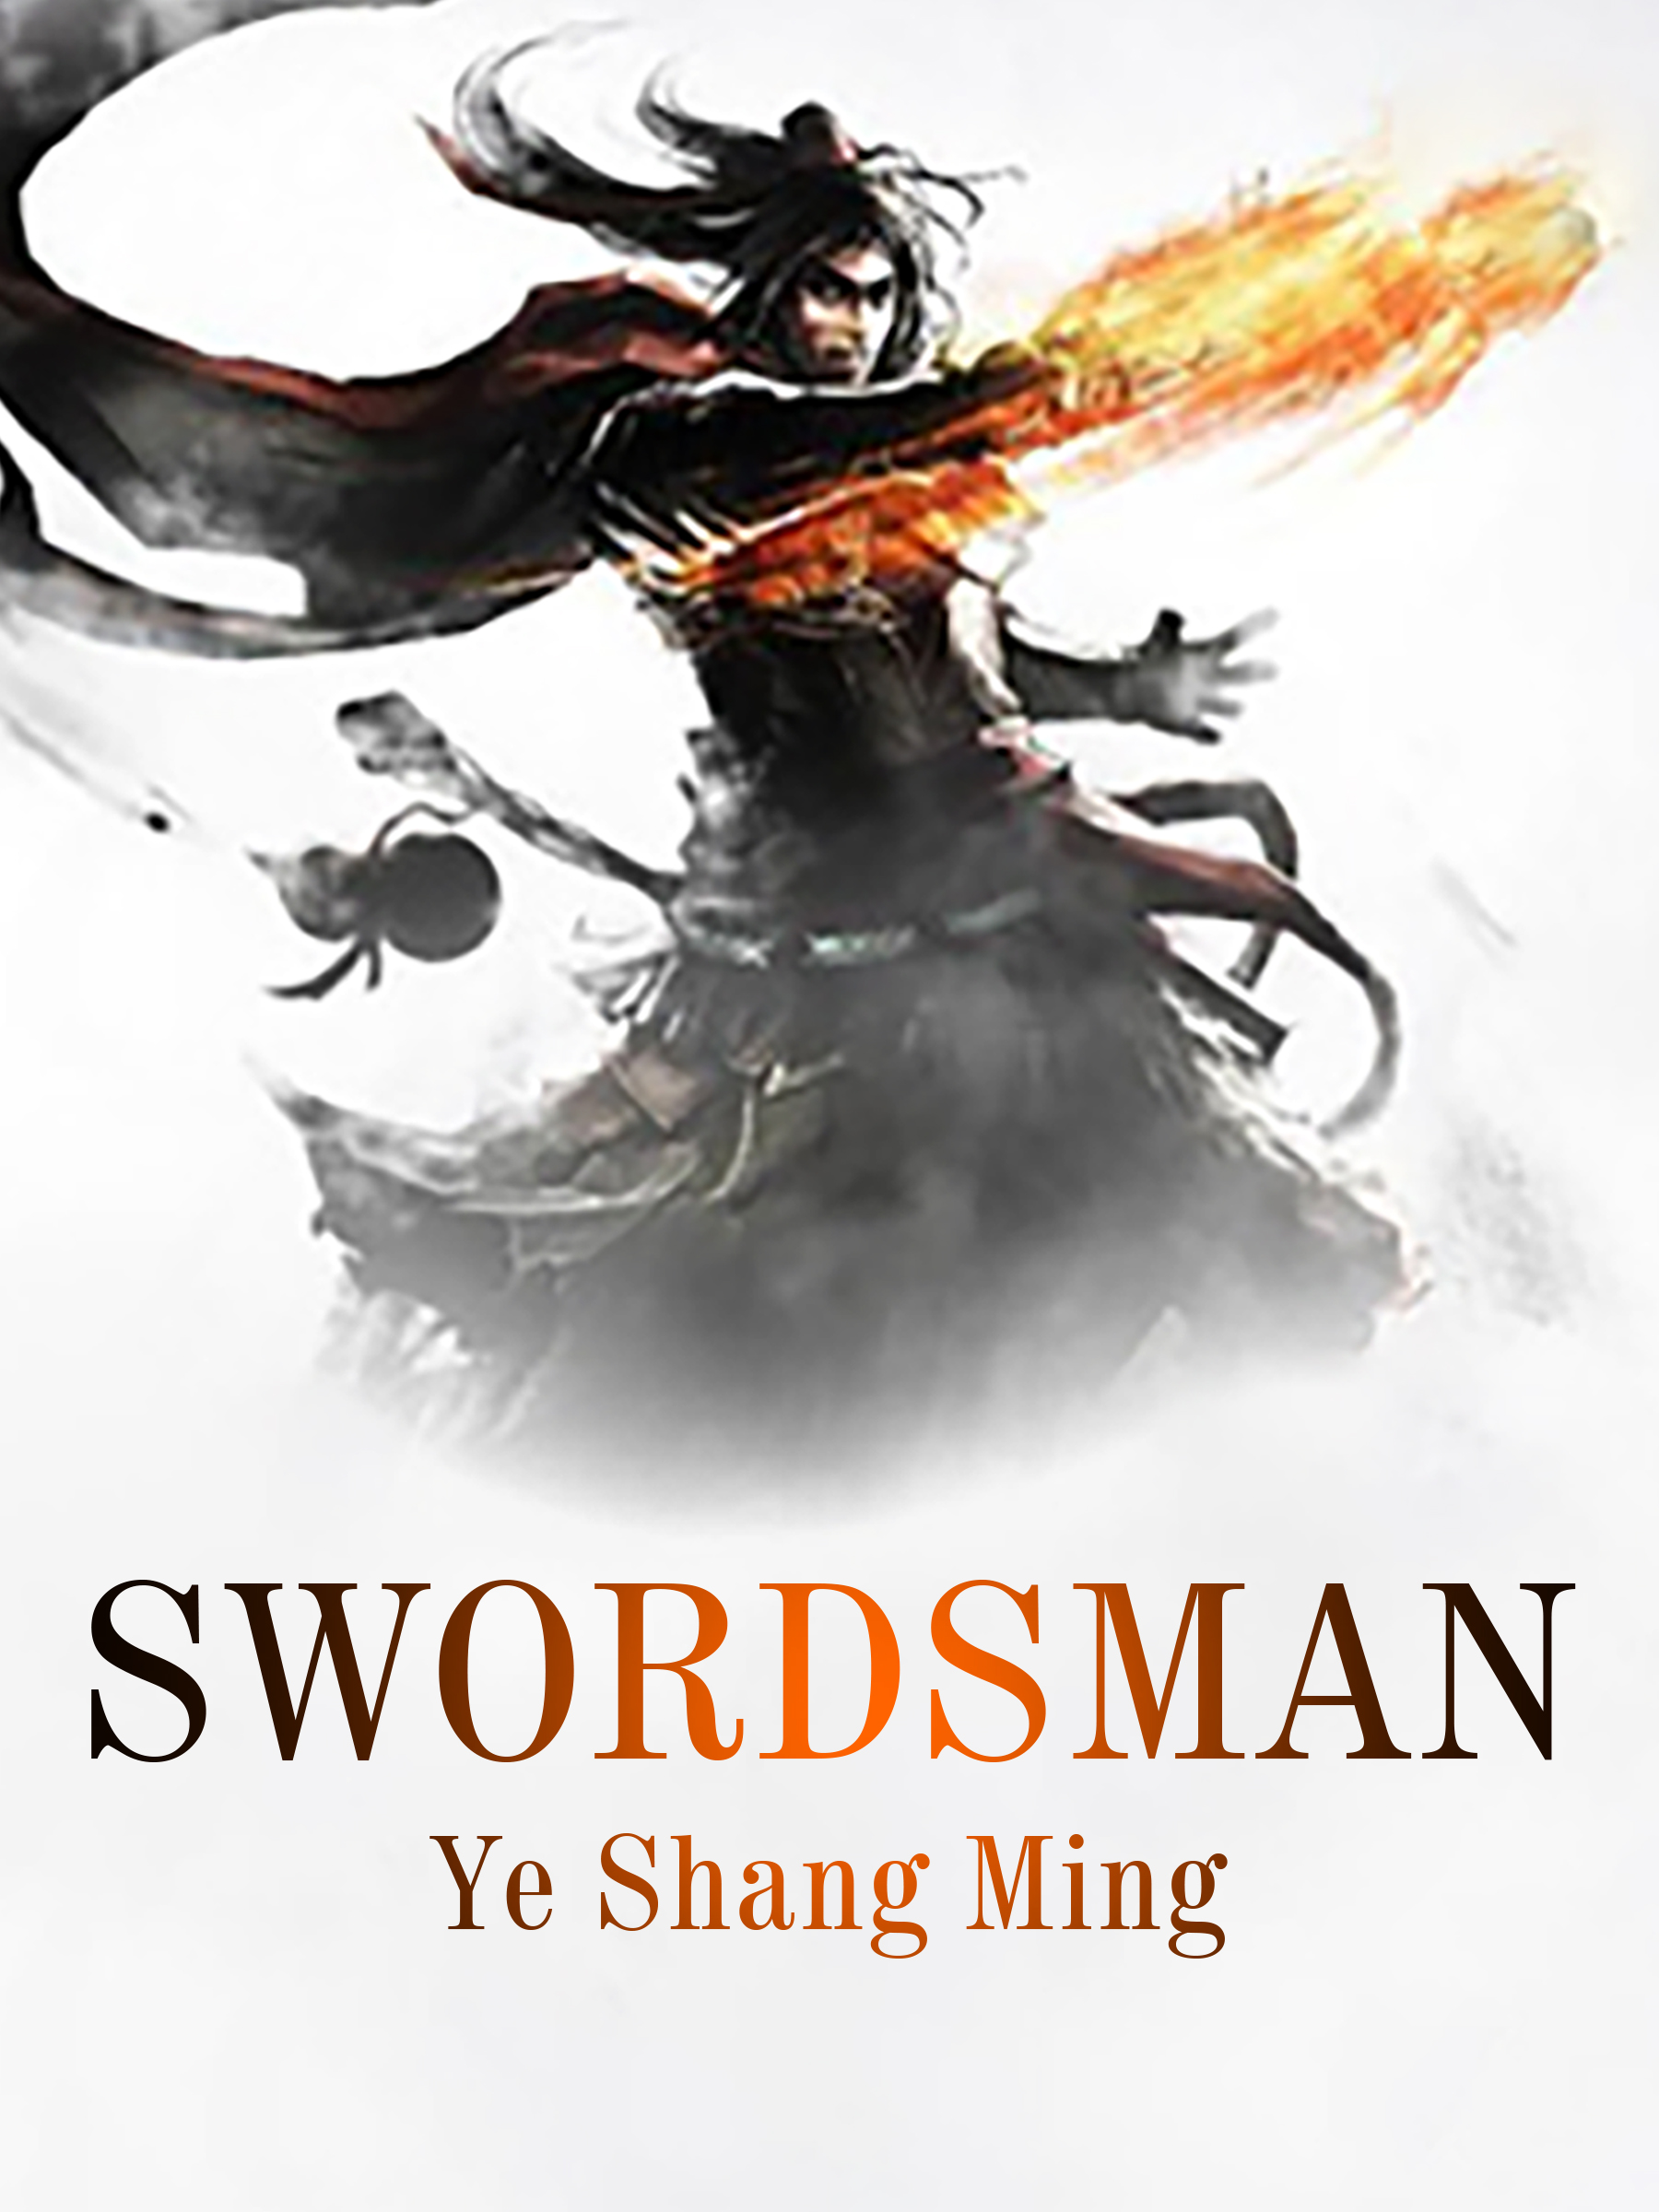 the expert swordmans companion pdf